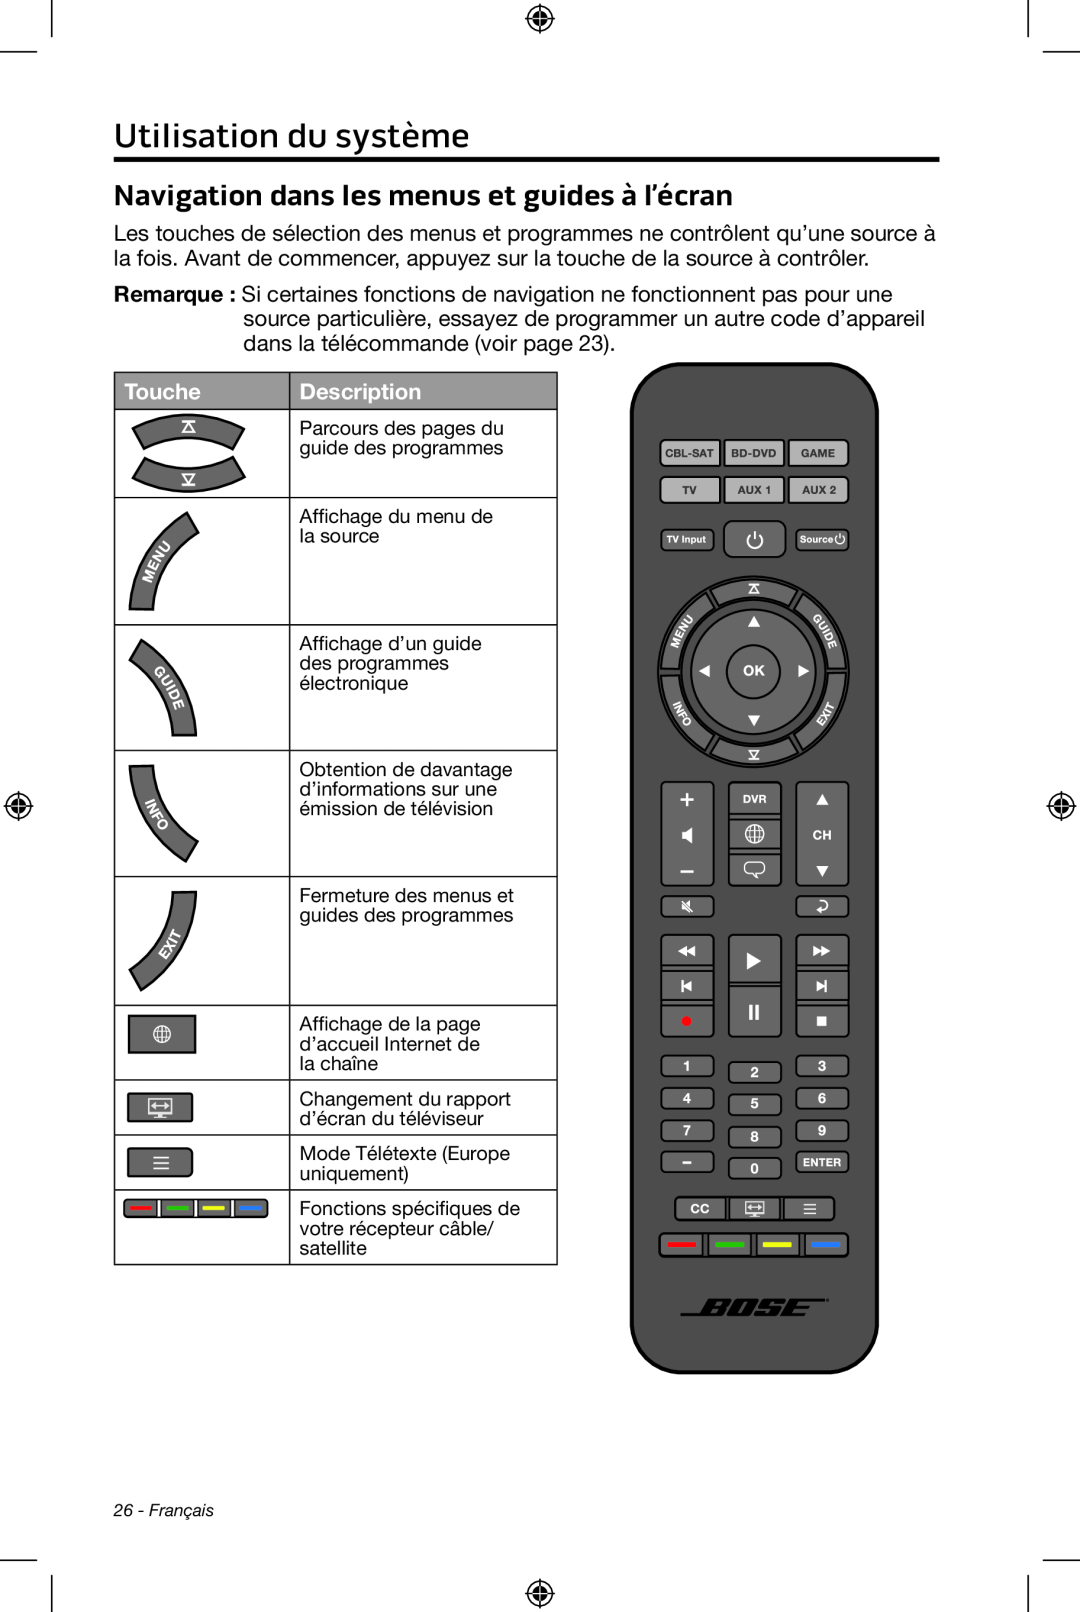 Bose CineMate 15/10 manual Utilisation du système, Navigation dans les menus et guides à l’écran, Touche, Description 